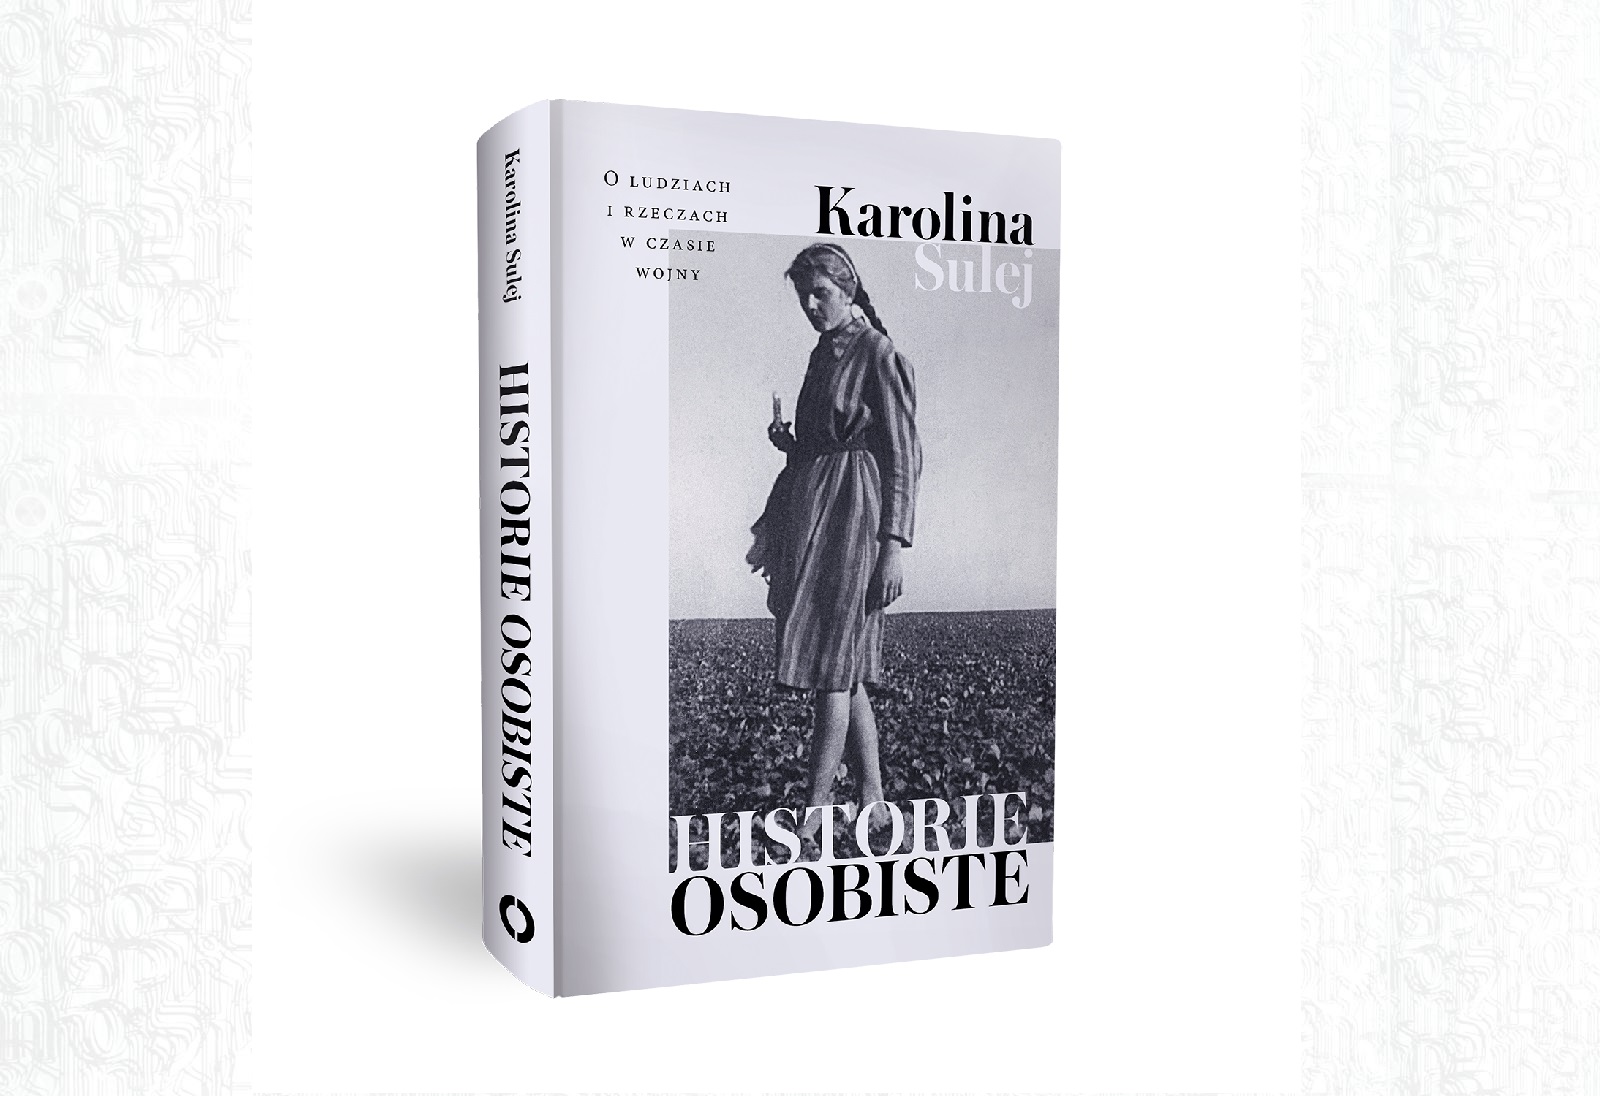 Książka Karoliny Sulej "Historie osobiste". Na czarno-białym zdjęciu kobieta z warkoczem ubrana w sukienkę.